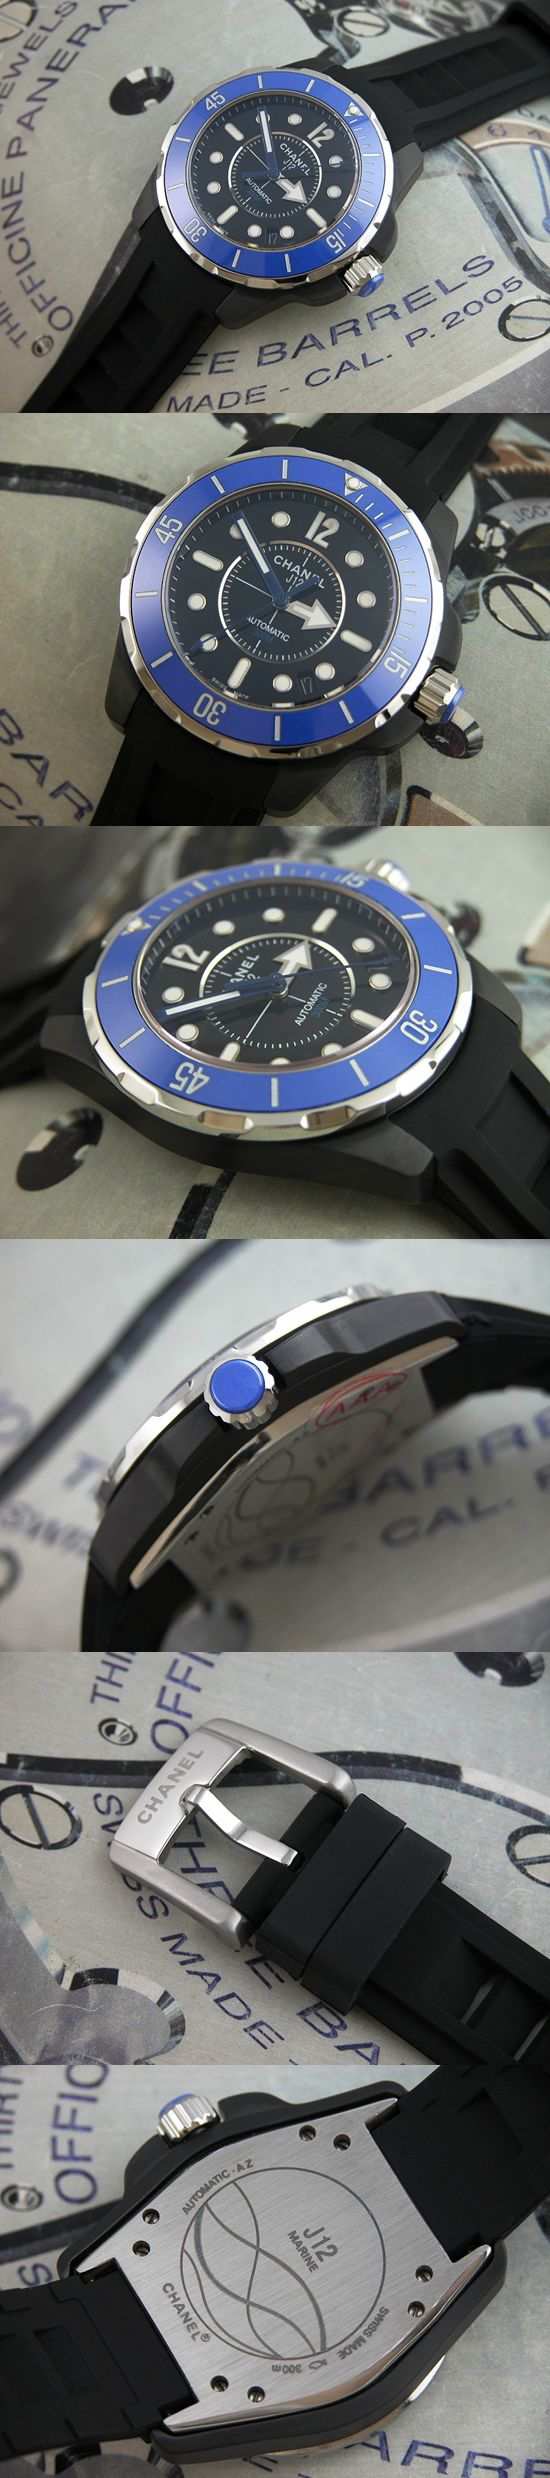 おしゃれなブランド時計がシャネル-CHANEL-H2559-J12マリン-男性用を提供します.